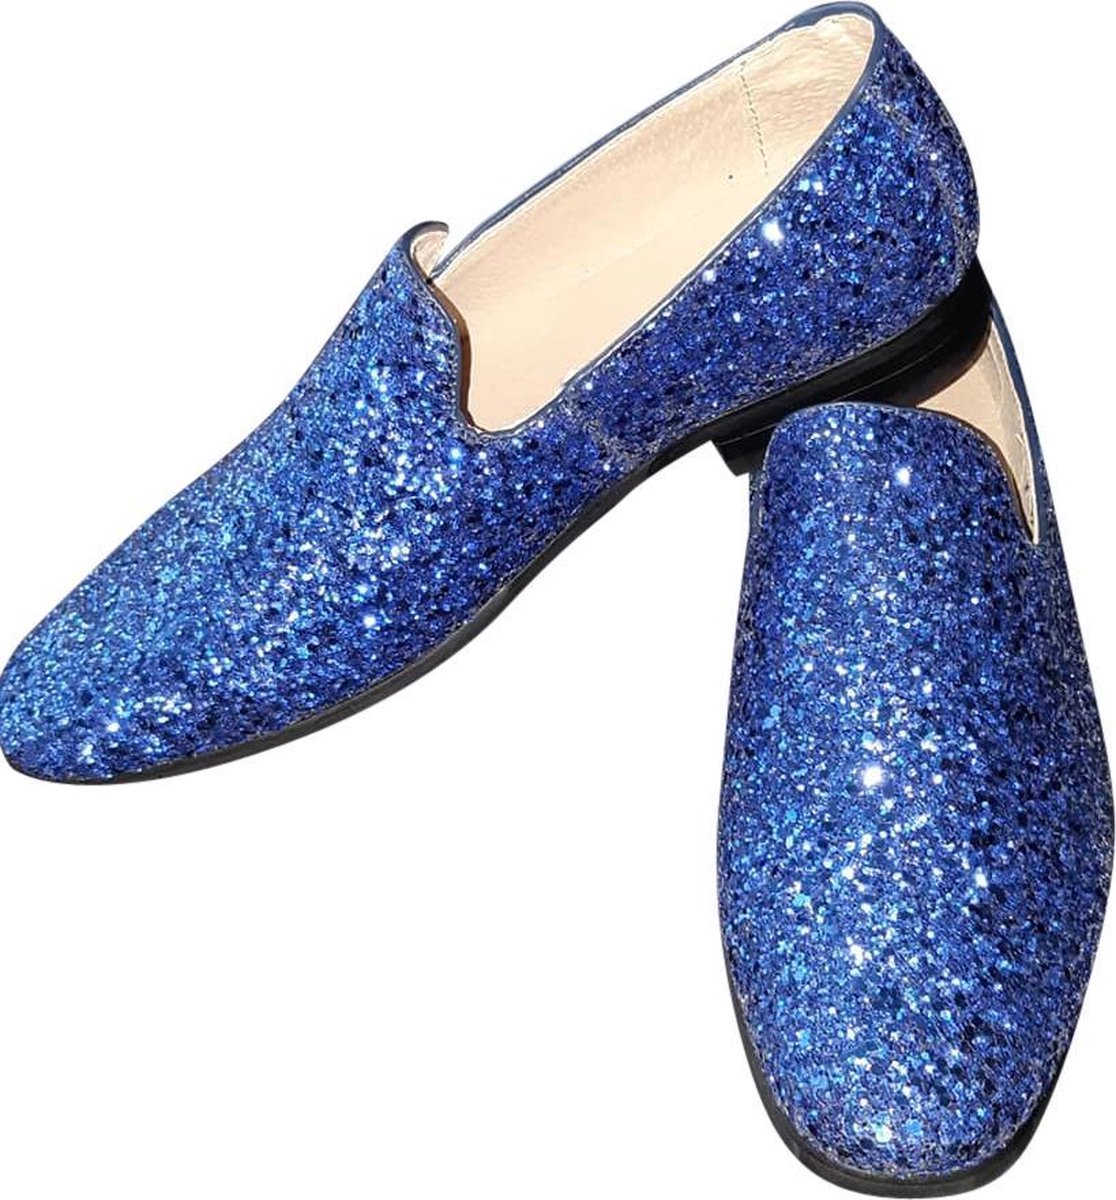 Heren - Glitter schoen - Kobalt blauw - Maat 46 - Disco